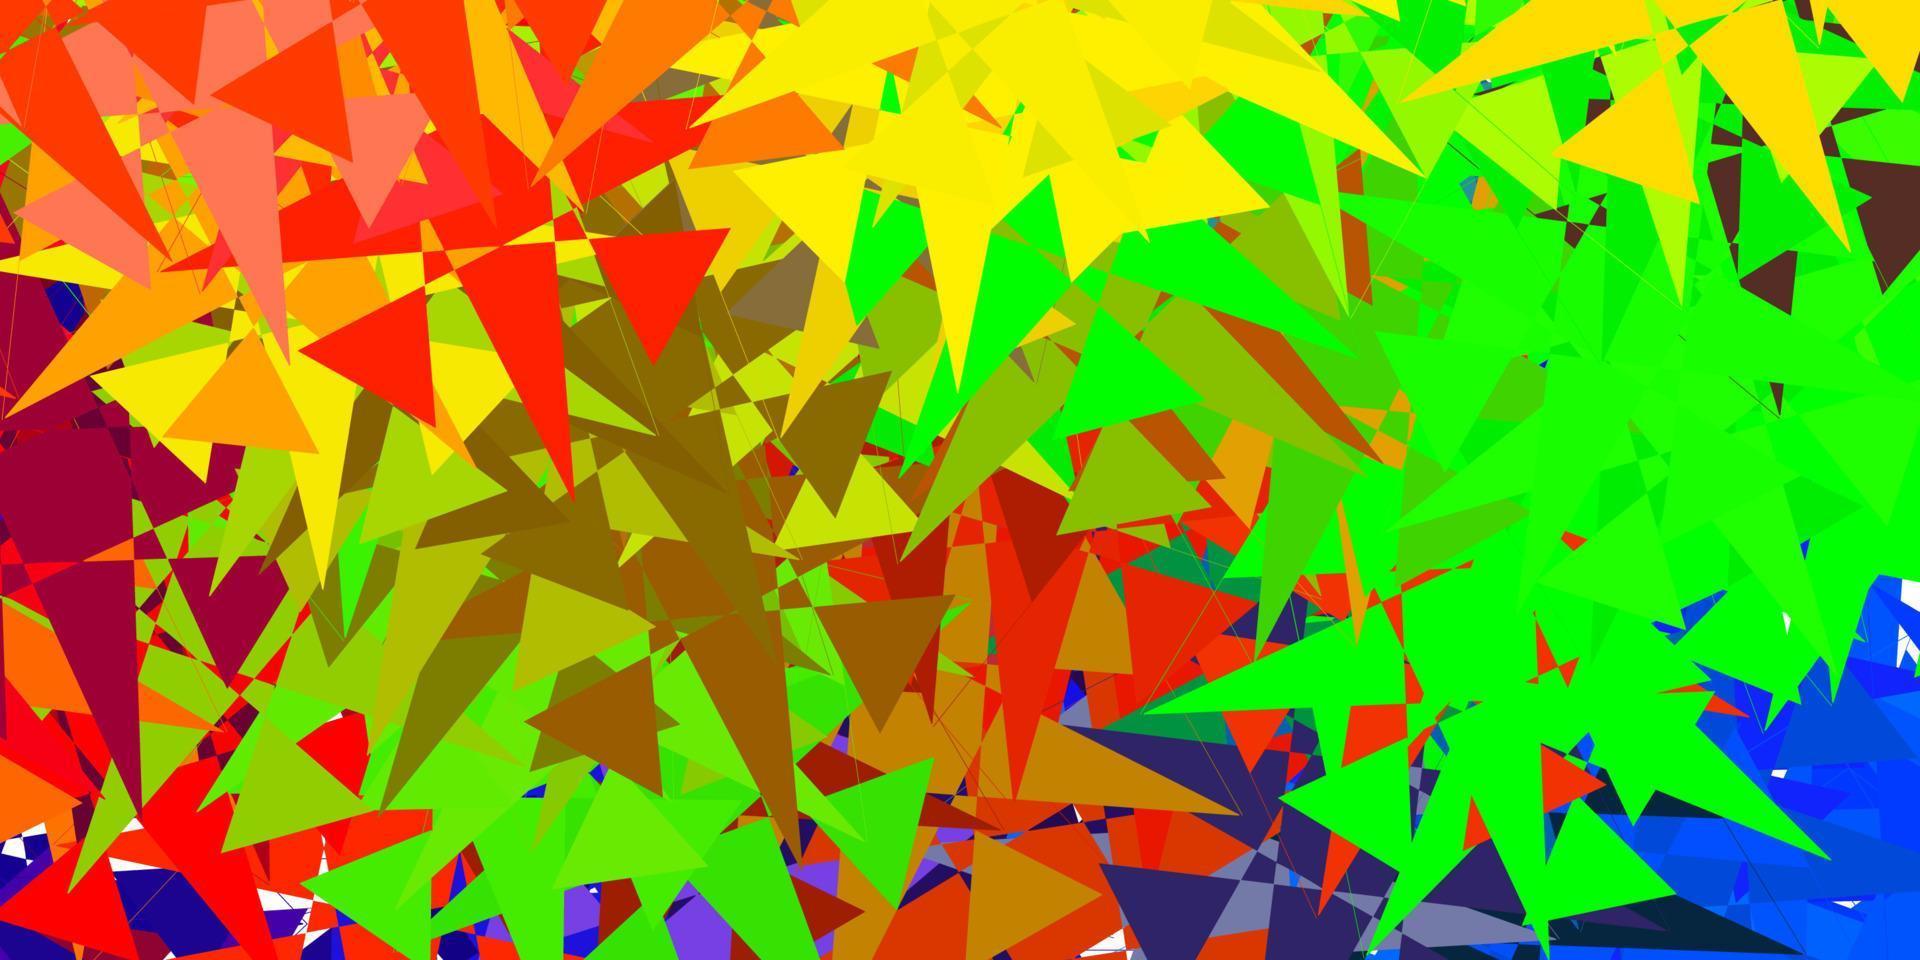 fond de vecteur multicolore clair avec des triangles.